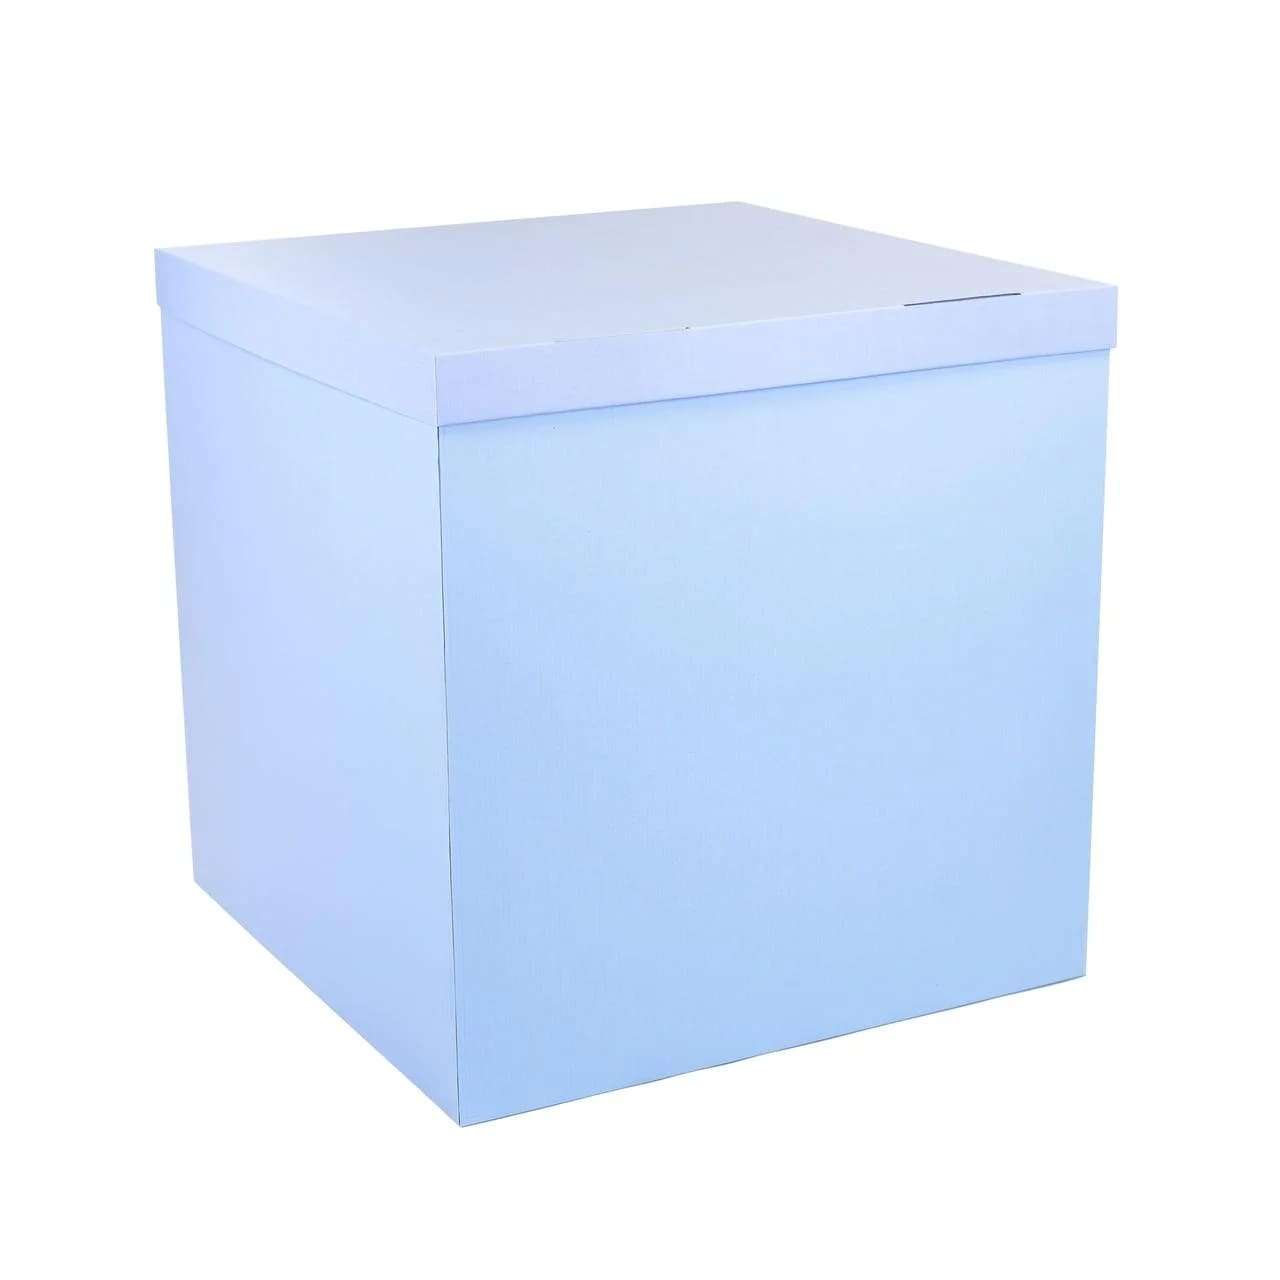 Коробка голубая 70*70*70см для воздушных шаров картинка